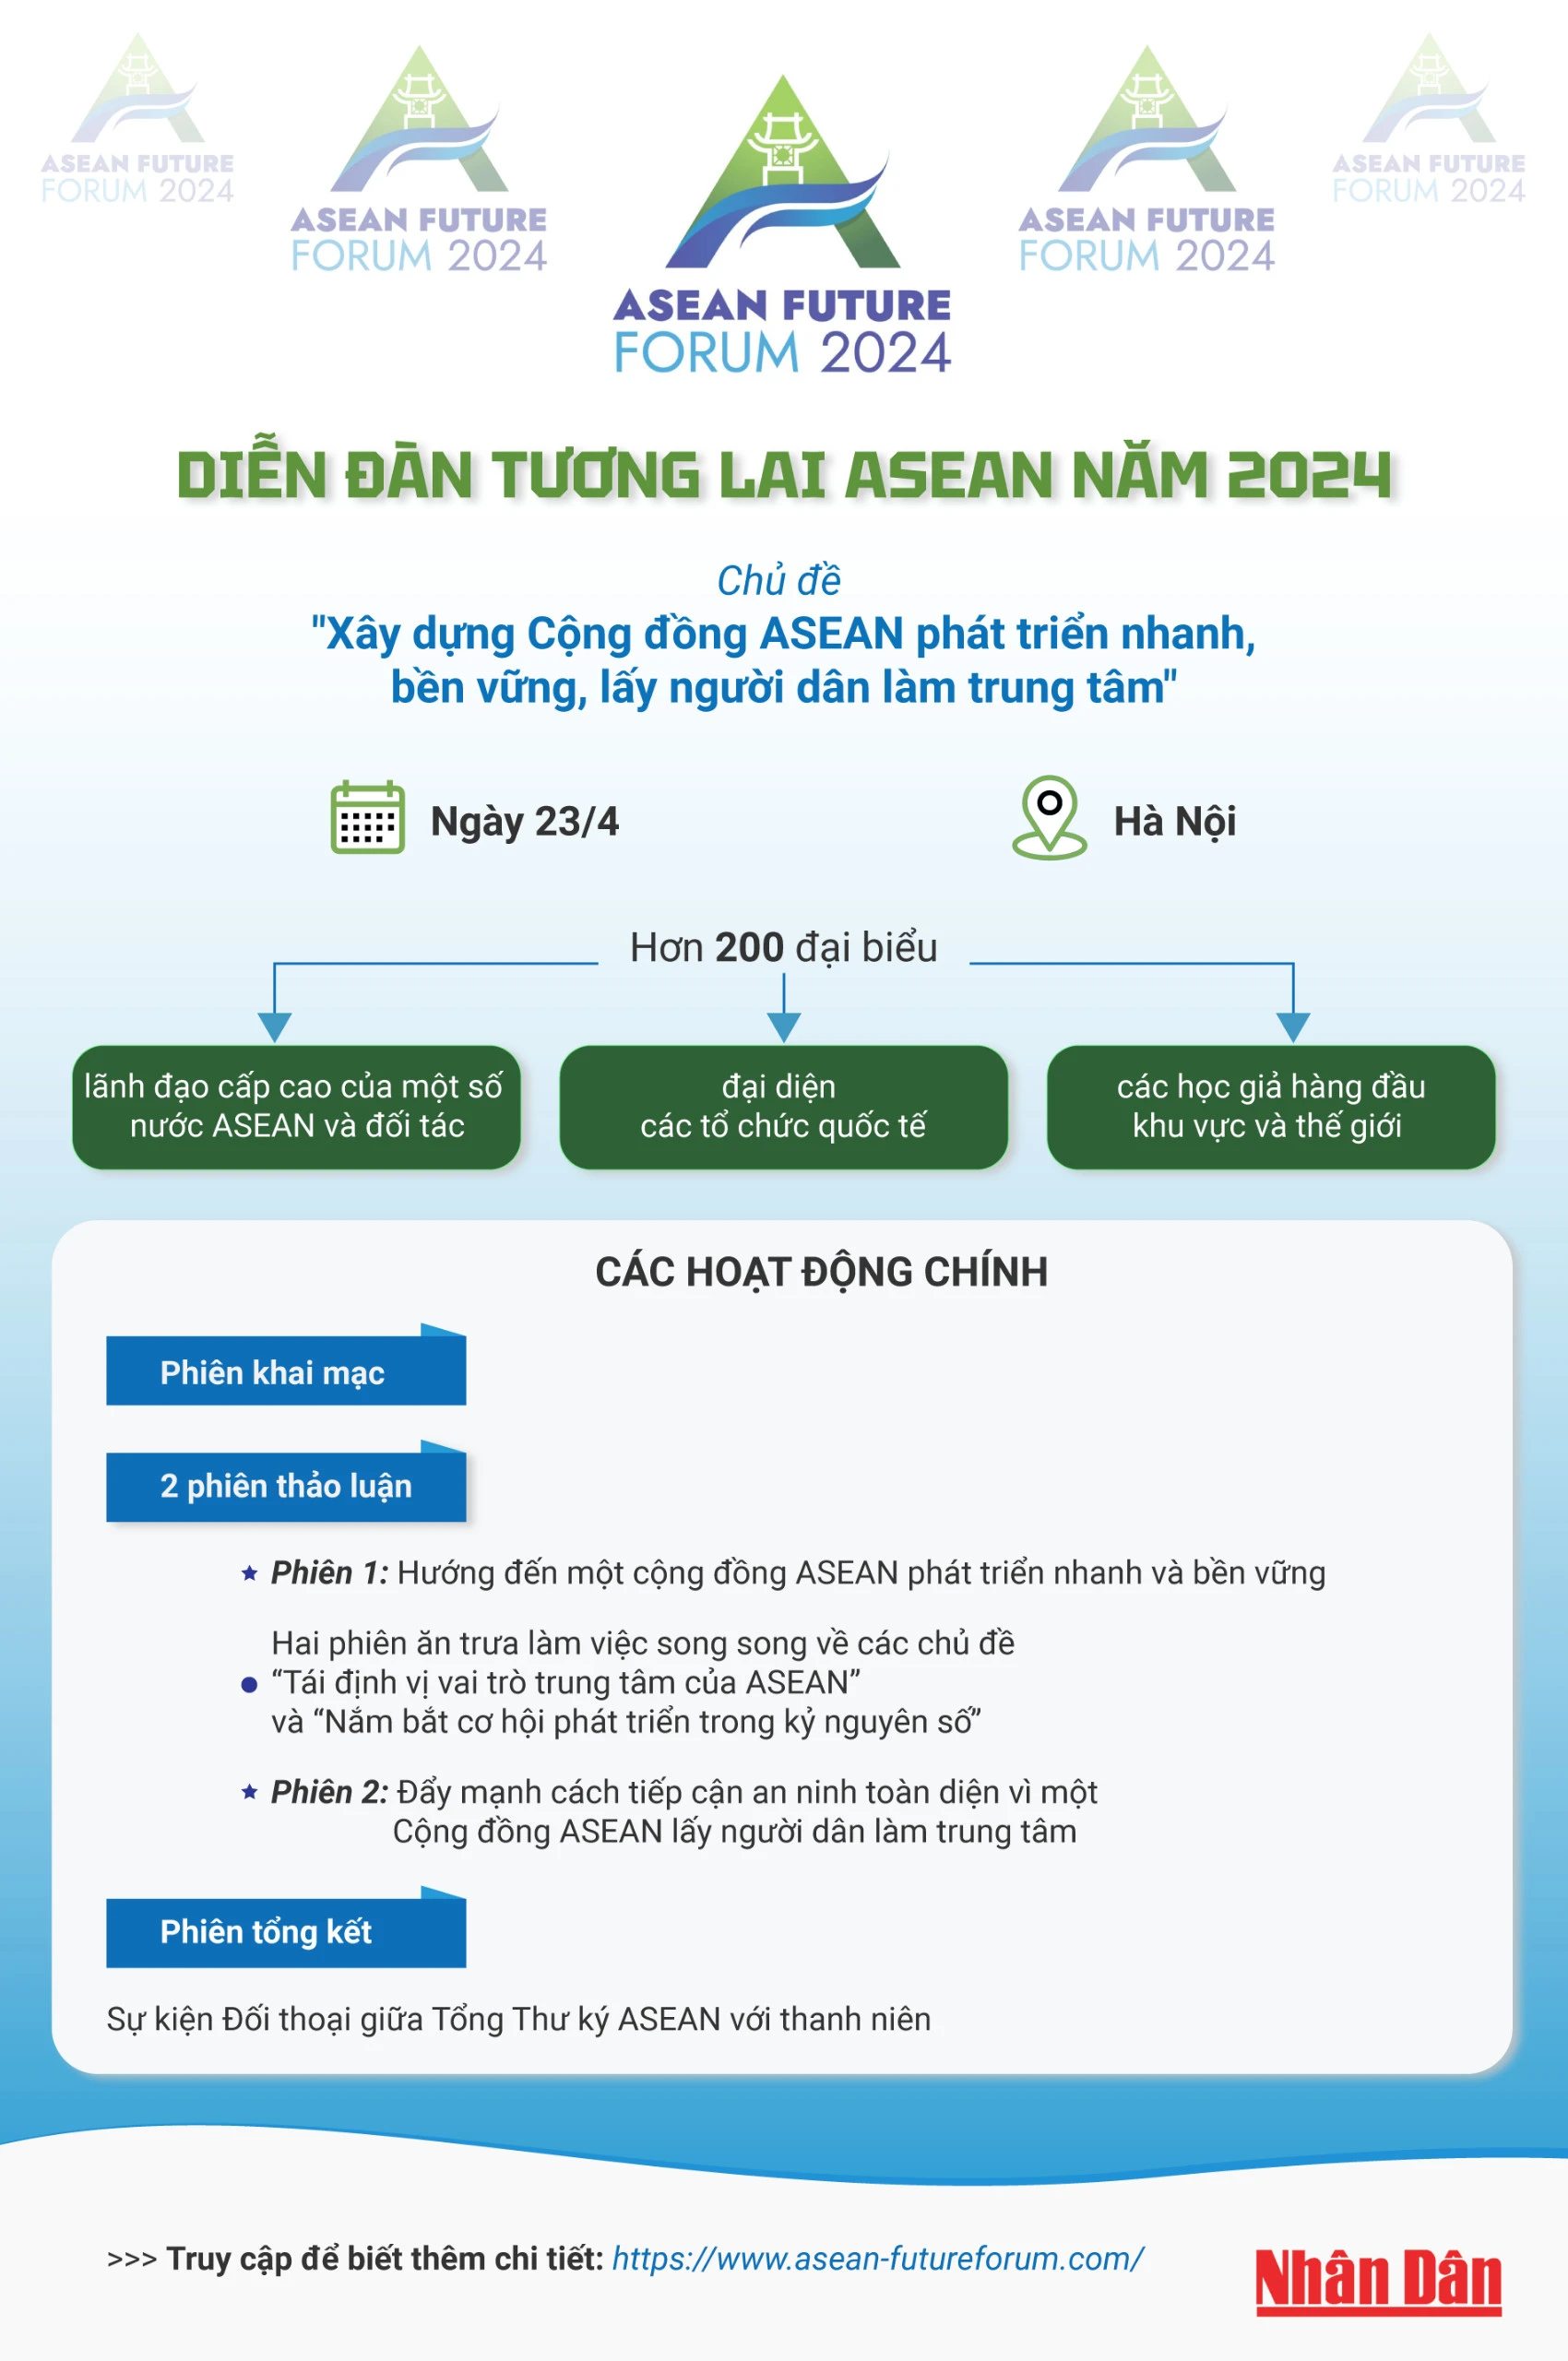 [Infographic] Diễn đàn Tương lai ASEAN năm 2024 ảnh 1